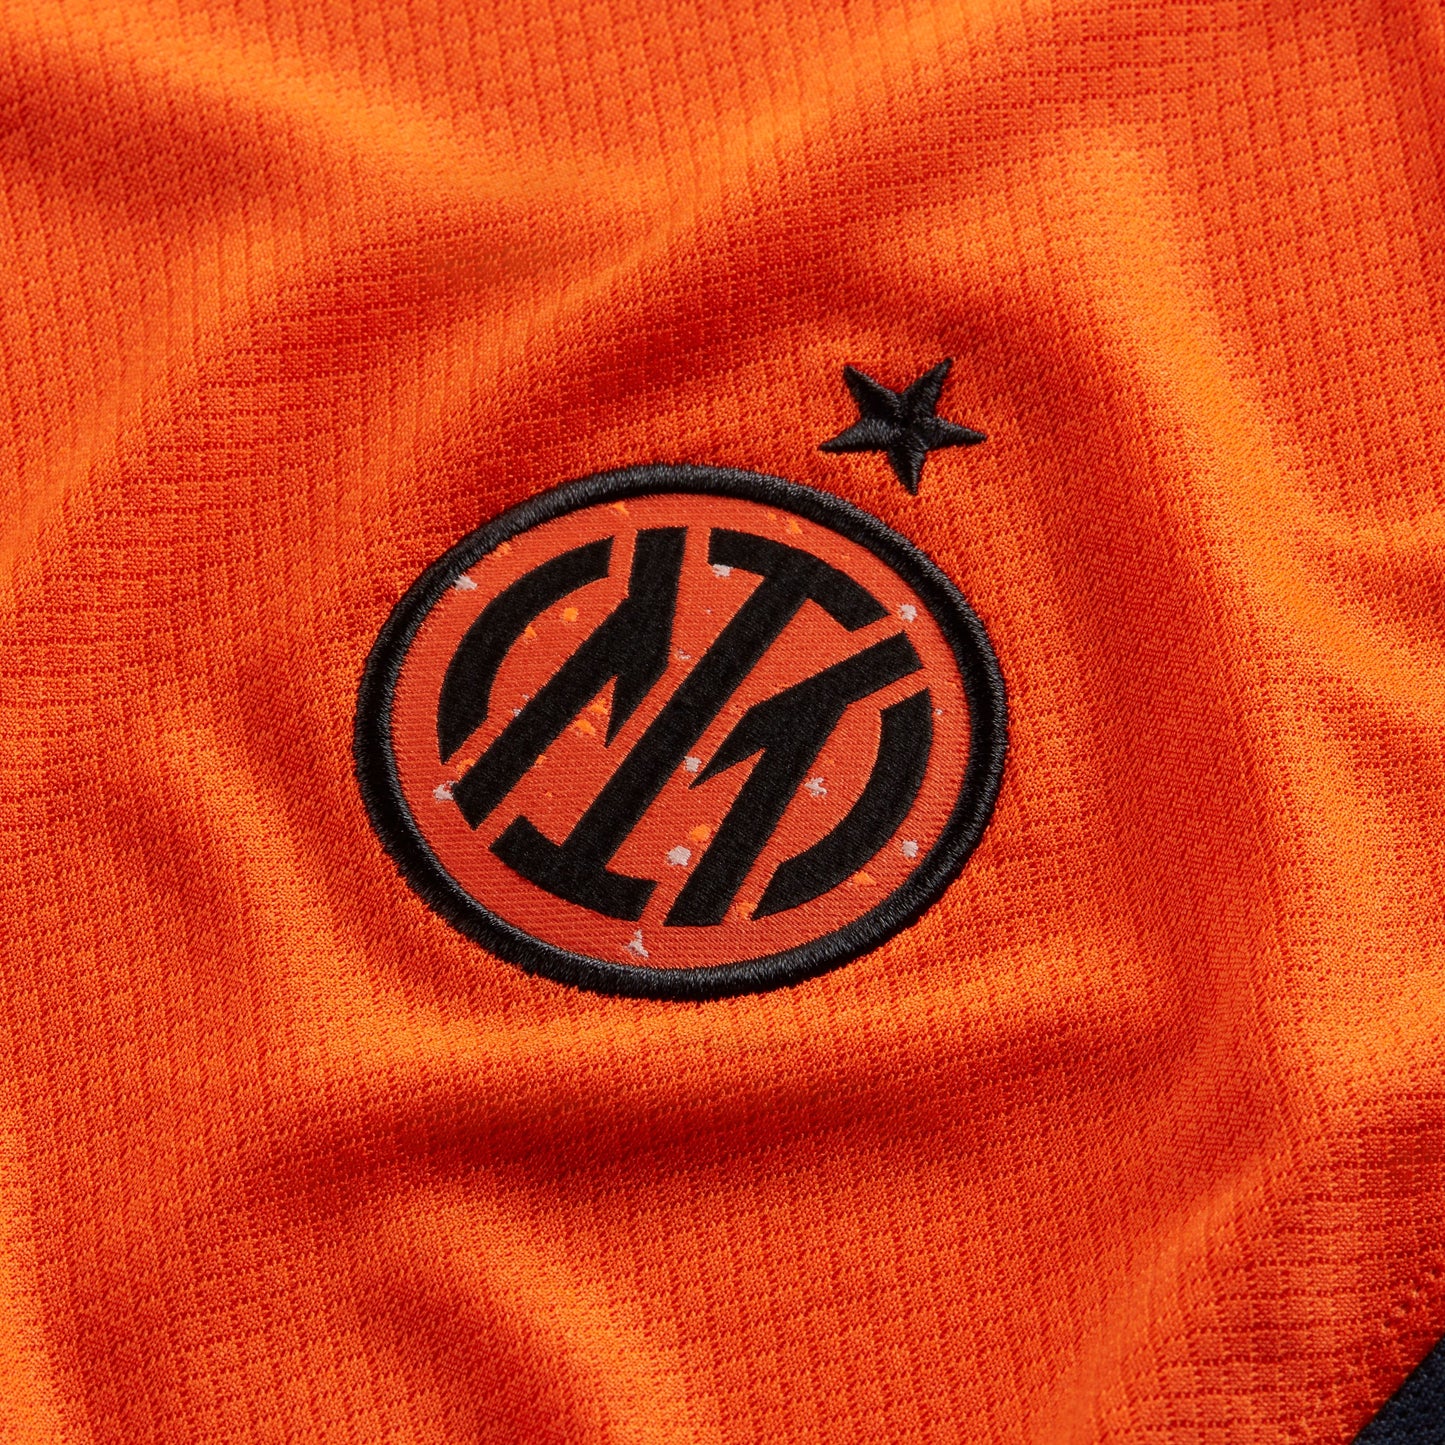 Nike Youth Inter Milan Third Jersey 2023/24 Orange